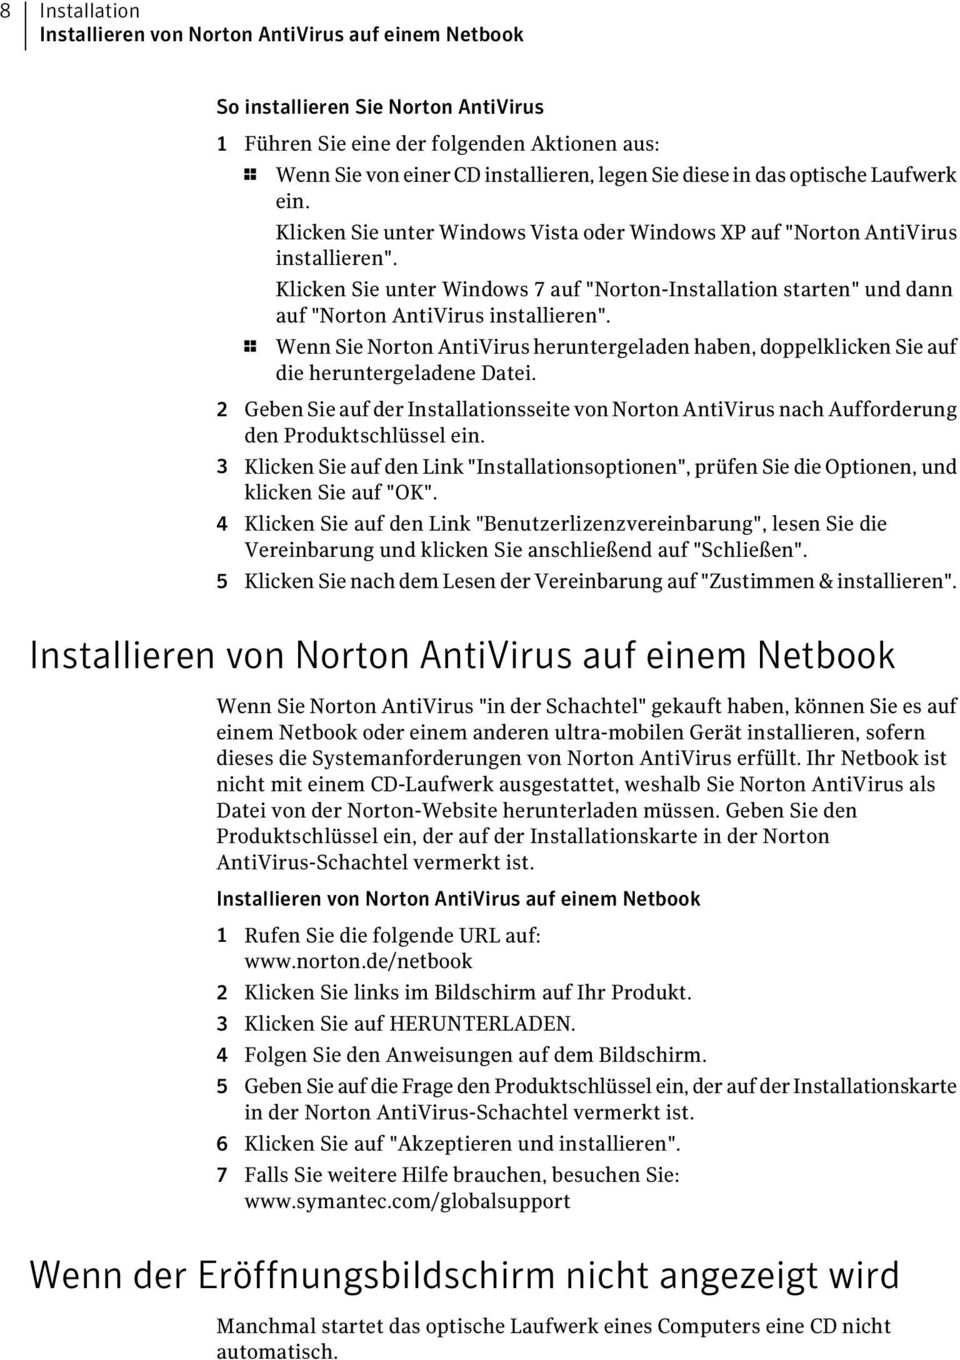 Klicken Sie unter Windows 7 auf "Norton-Installation starten" und dann auf "Norton AntiVirus installieren".